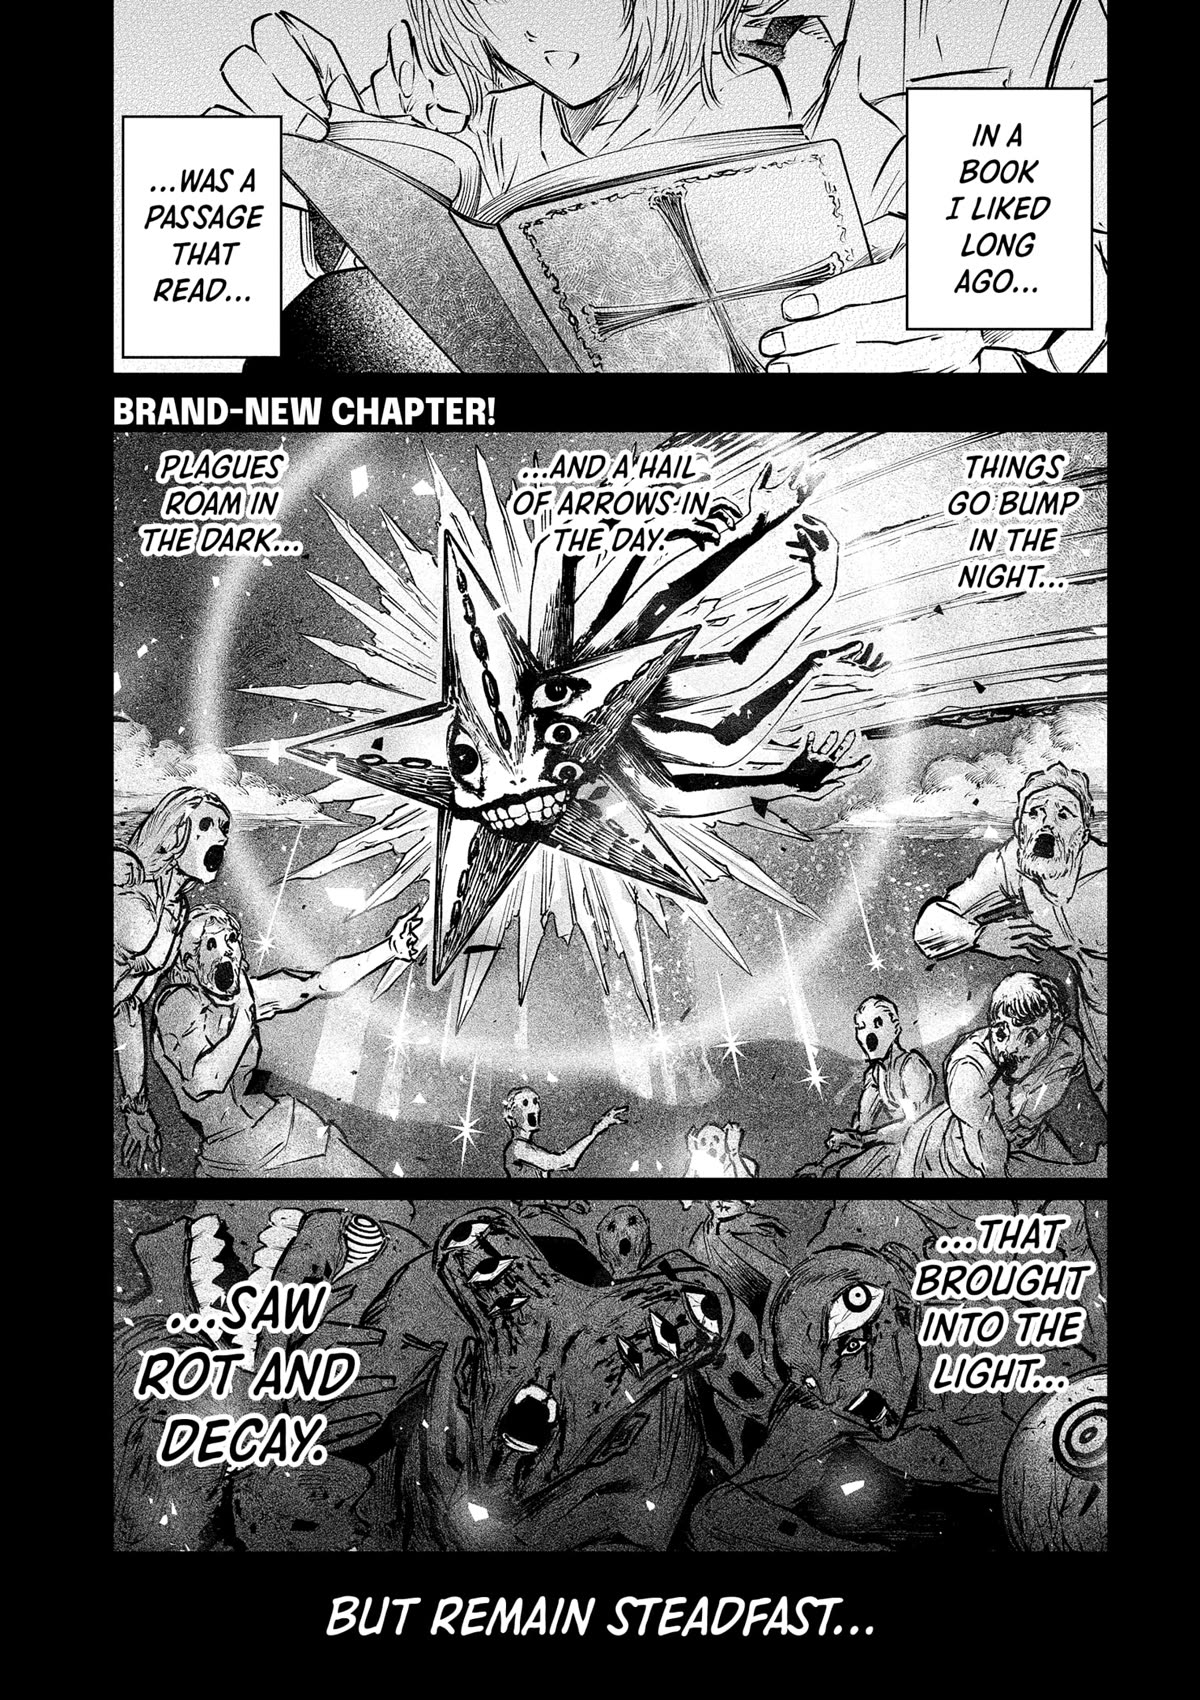 The Dark Doctor Ikuru - Page 1